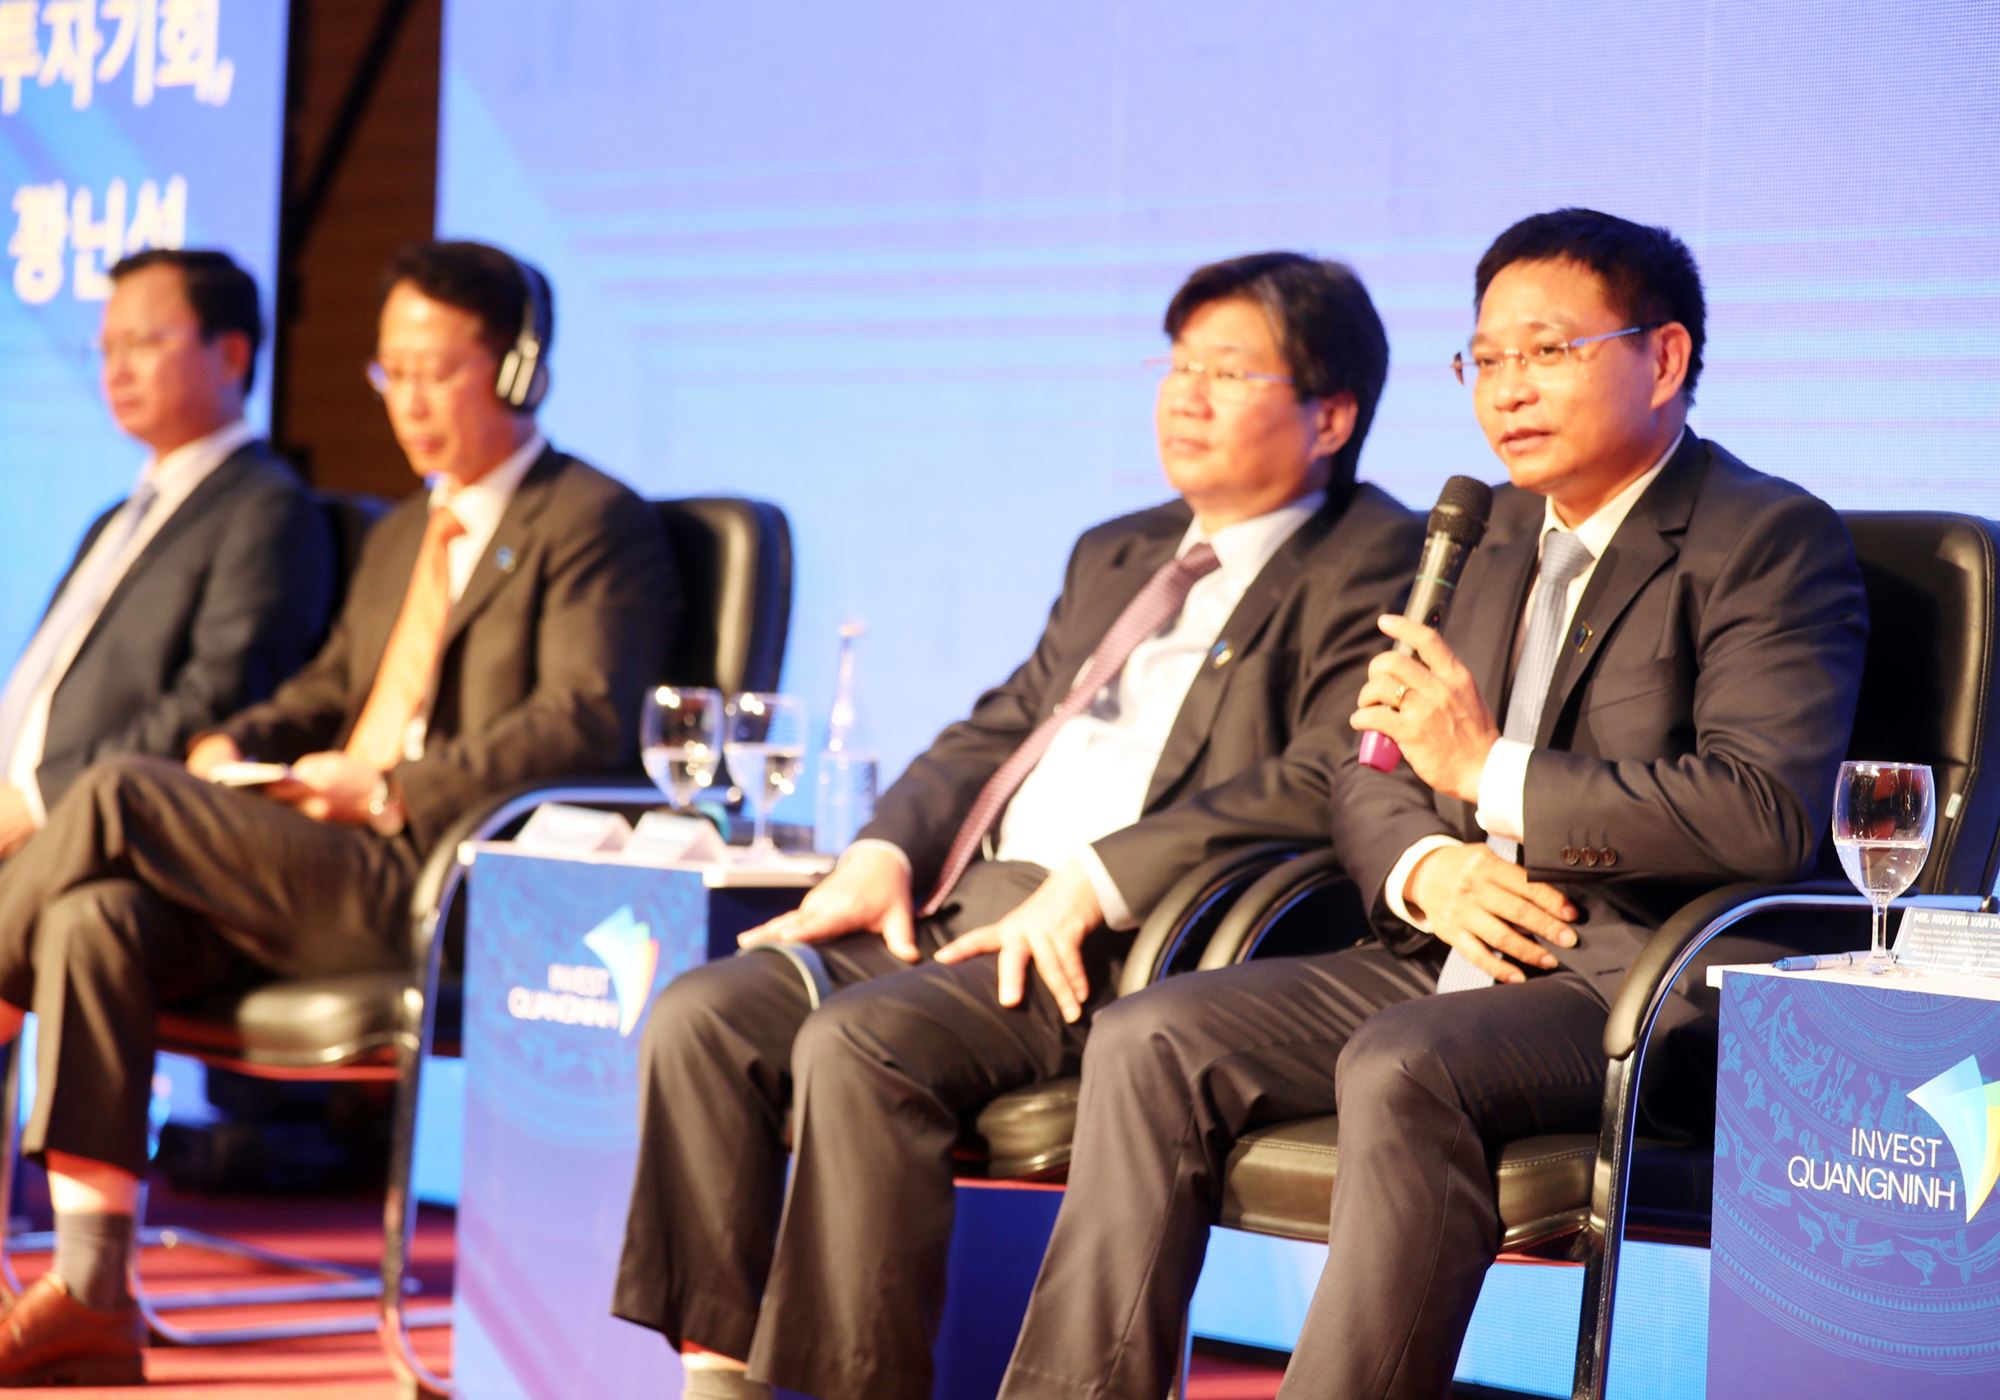 Trực tiếp Chủ tịch UBND tỉnh trao đổi, giải đáp thắc mắc của nhà đầu tư Hàn Quốc tại hội nghị.